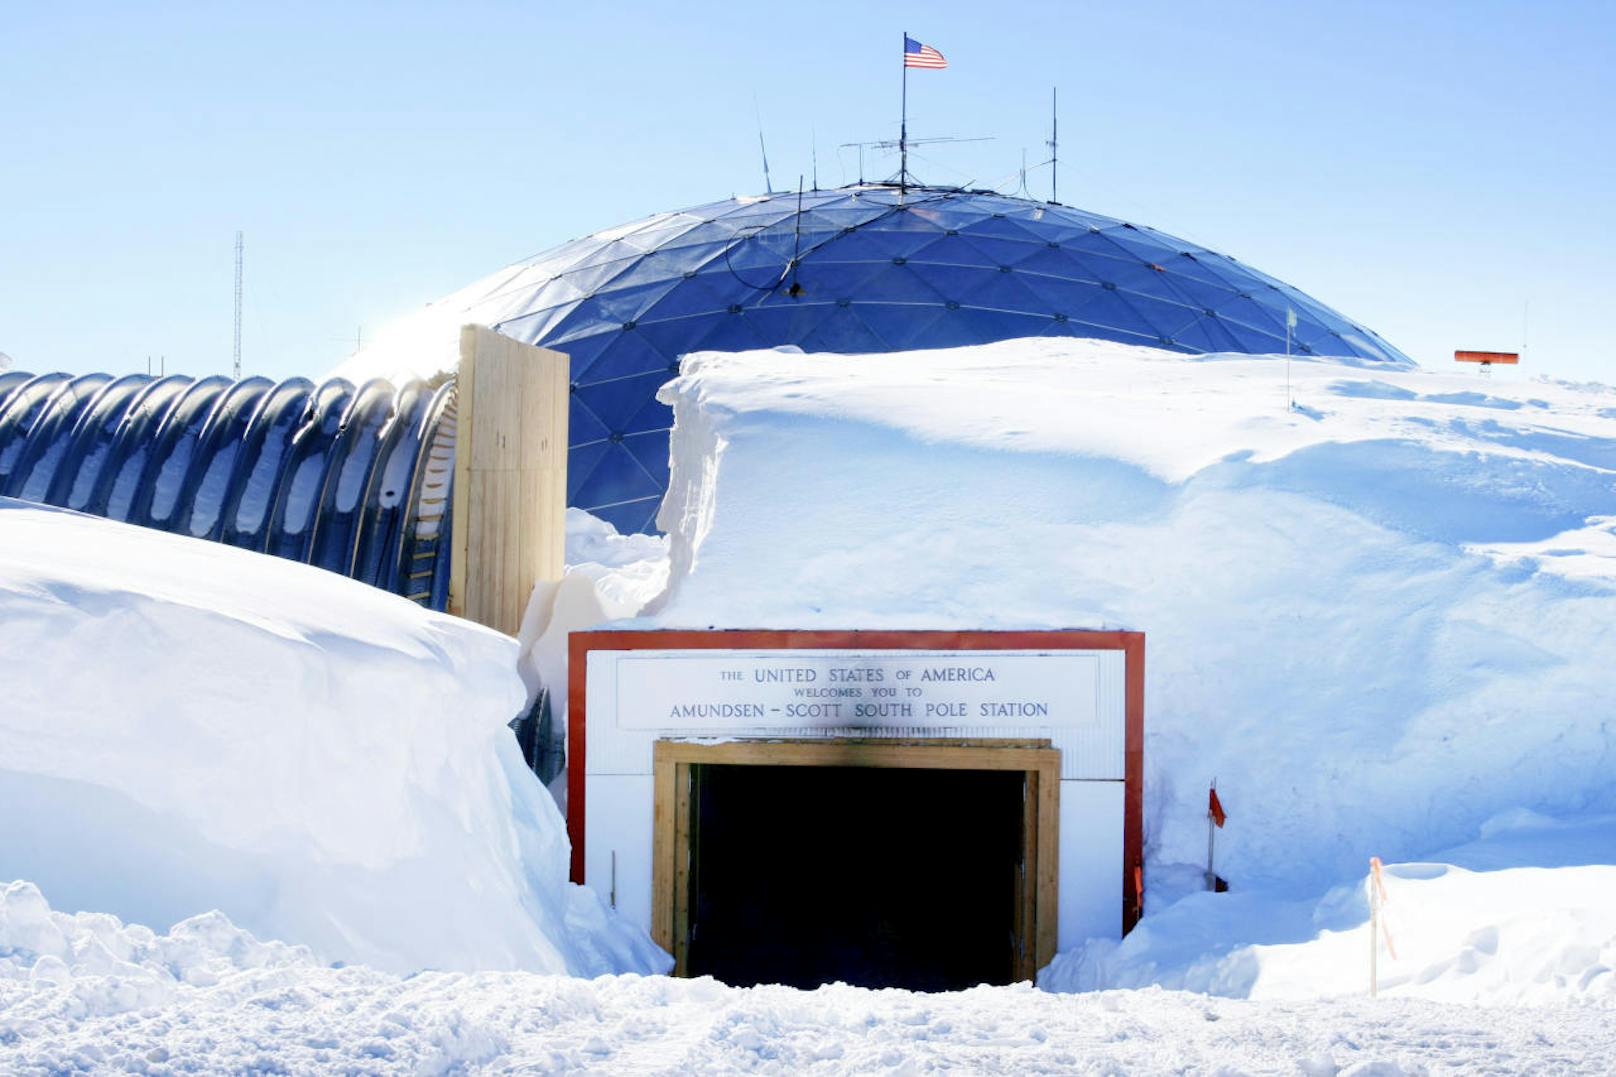 <b>Amundsen-Scott-Südpolstation, Antarktis</b>
Nicht viel wärmer sind die Temperaturen auf diesem Hochplateau in 2835 Metern Höhe, das 130 Forschern einen Arbeitsplatz bietet. Hier wurden bereits minus 82,8 Grad Celsius gemessen. Im antarktischen Winter zieht es aber zwei Drittel von ihnen wieder an die Wärme, denn über sechs Monate hinweg ist die Sonne nicht zu sehen.